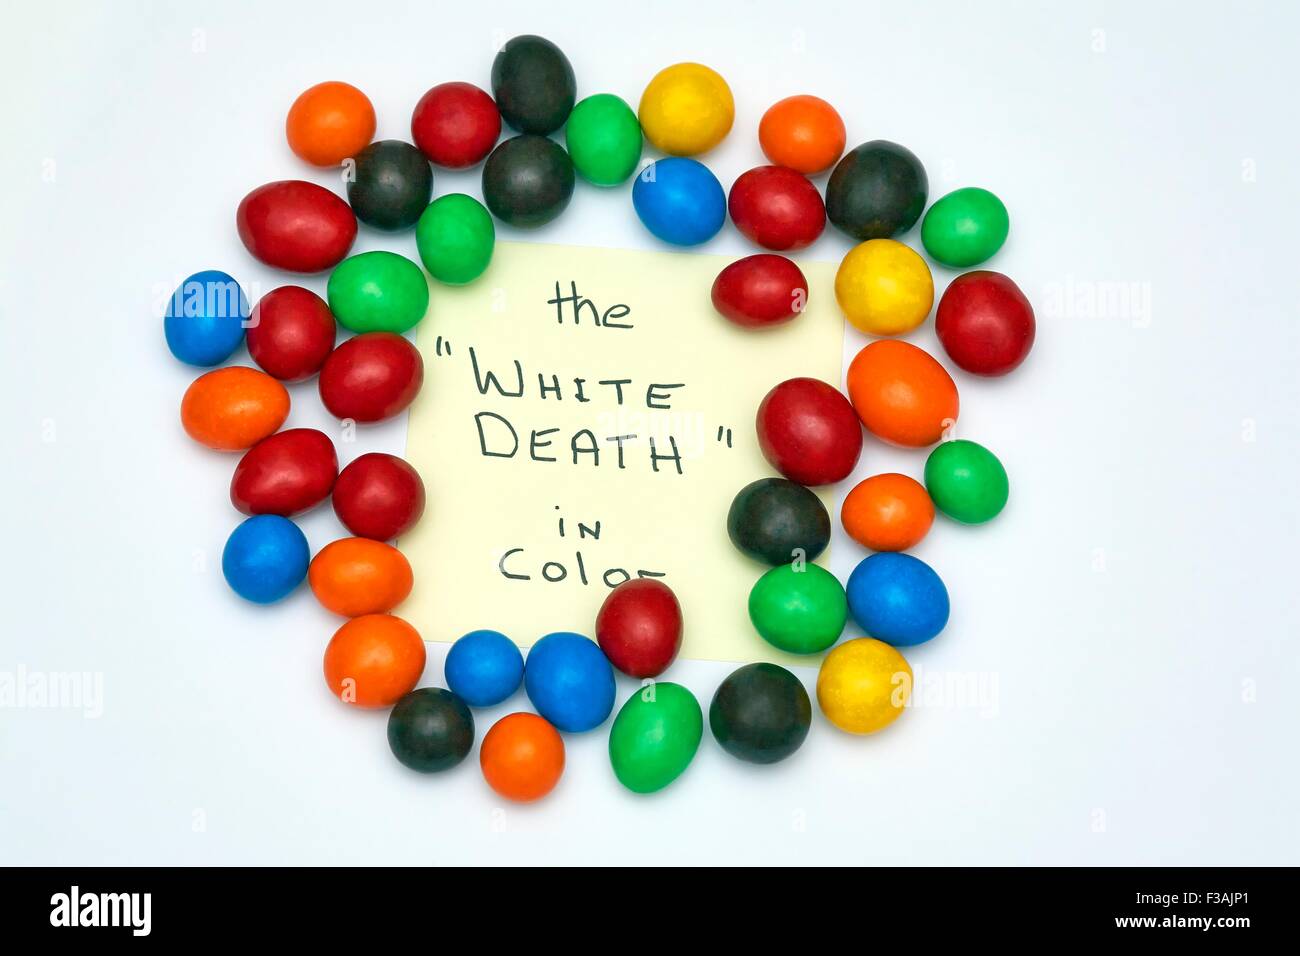 Generische farbige Candy Kugeln hohen Zuckergehalt der weiße Tod in Farbe Stockfoto